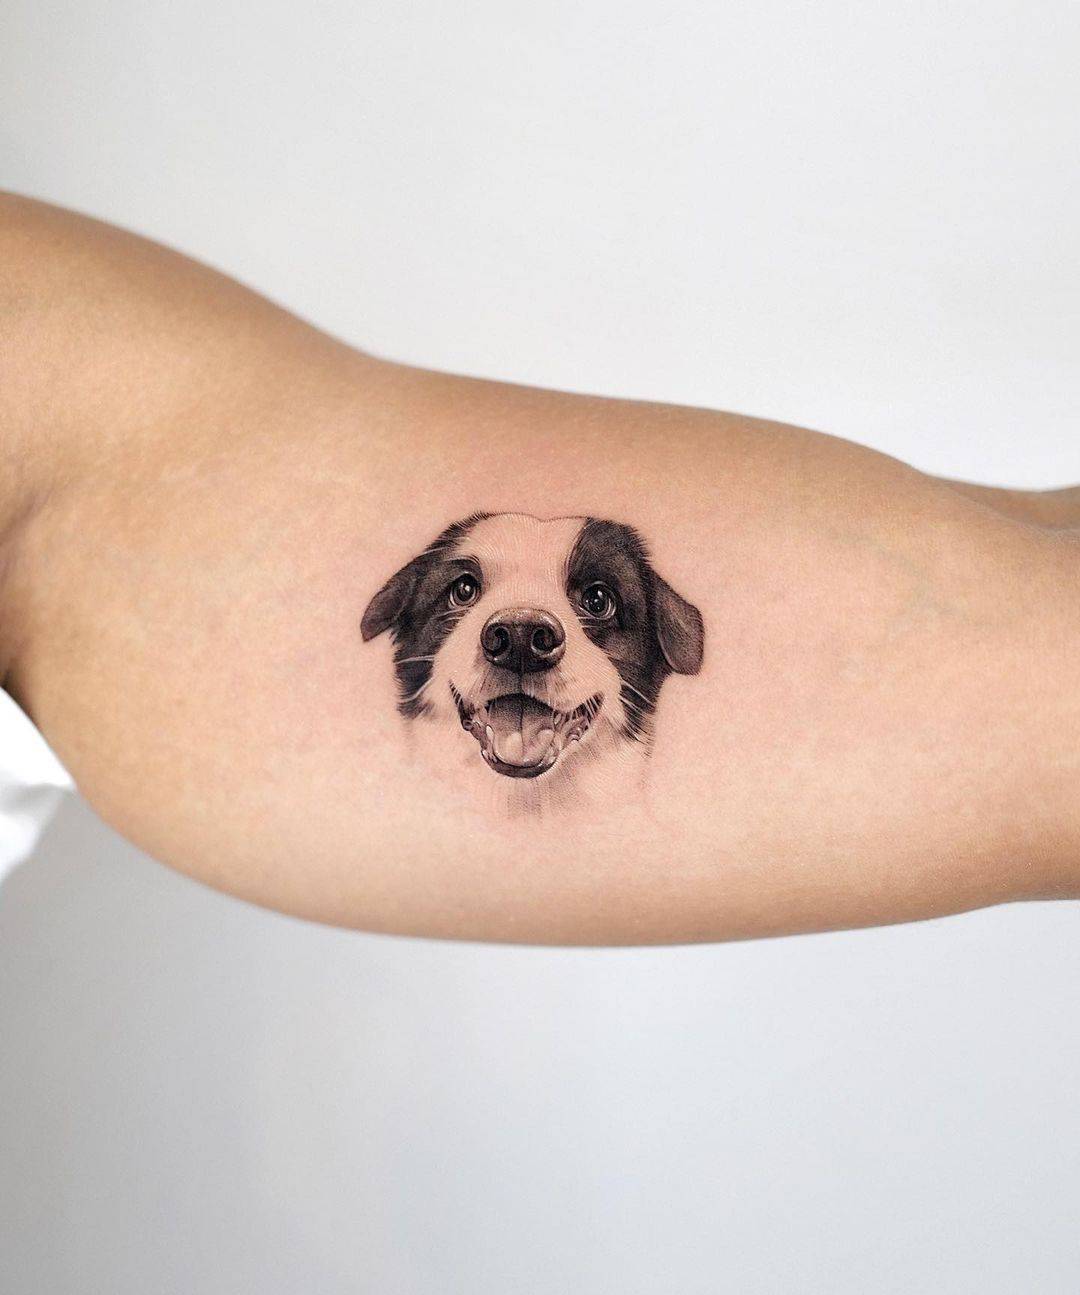 Realistic dog tattoo by tattooist eheon